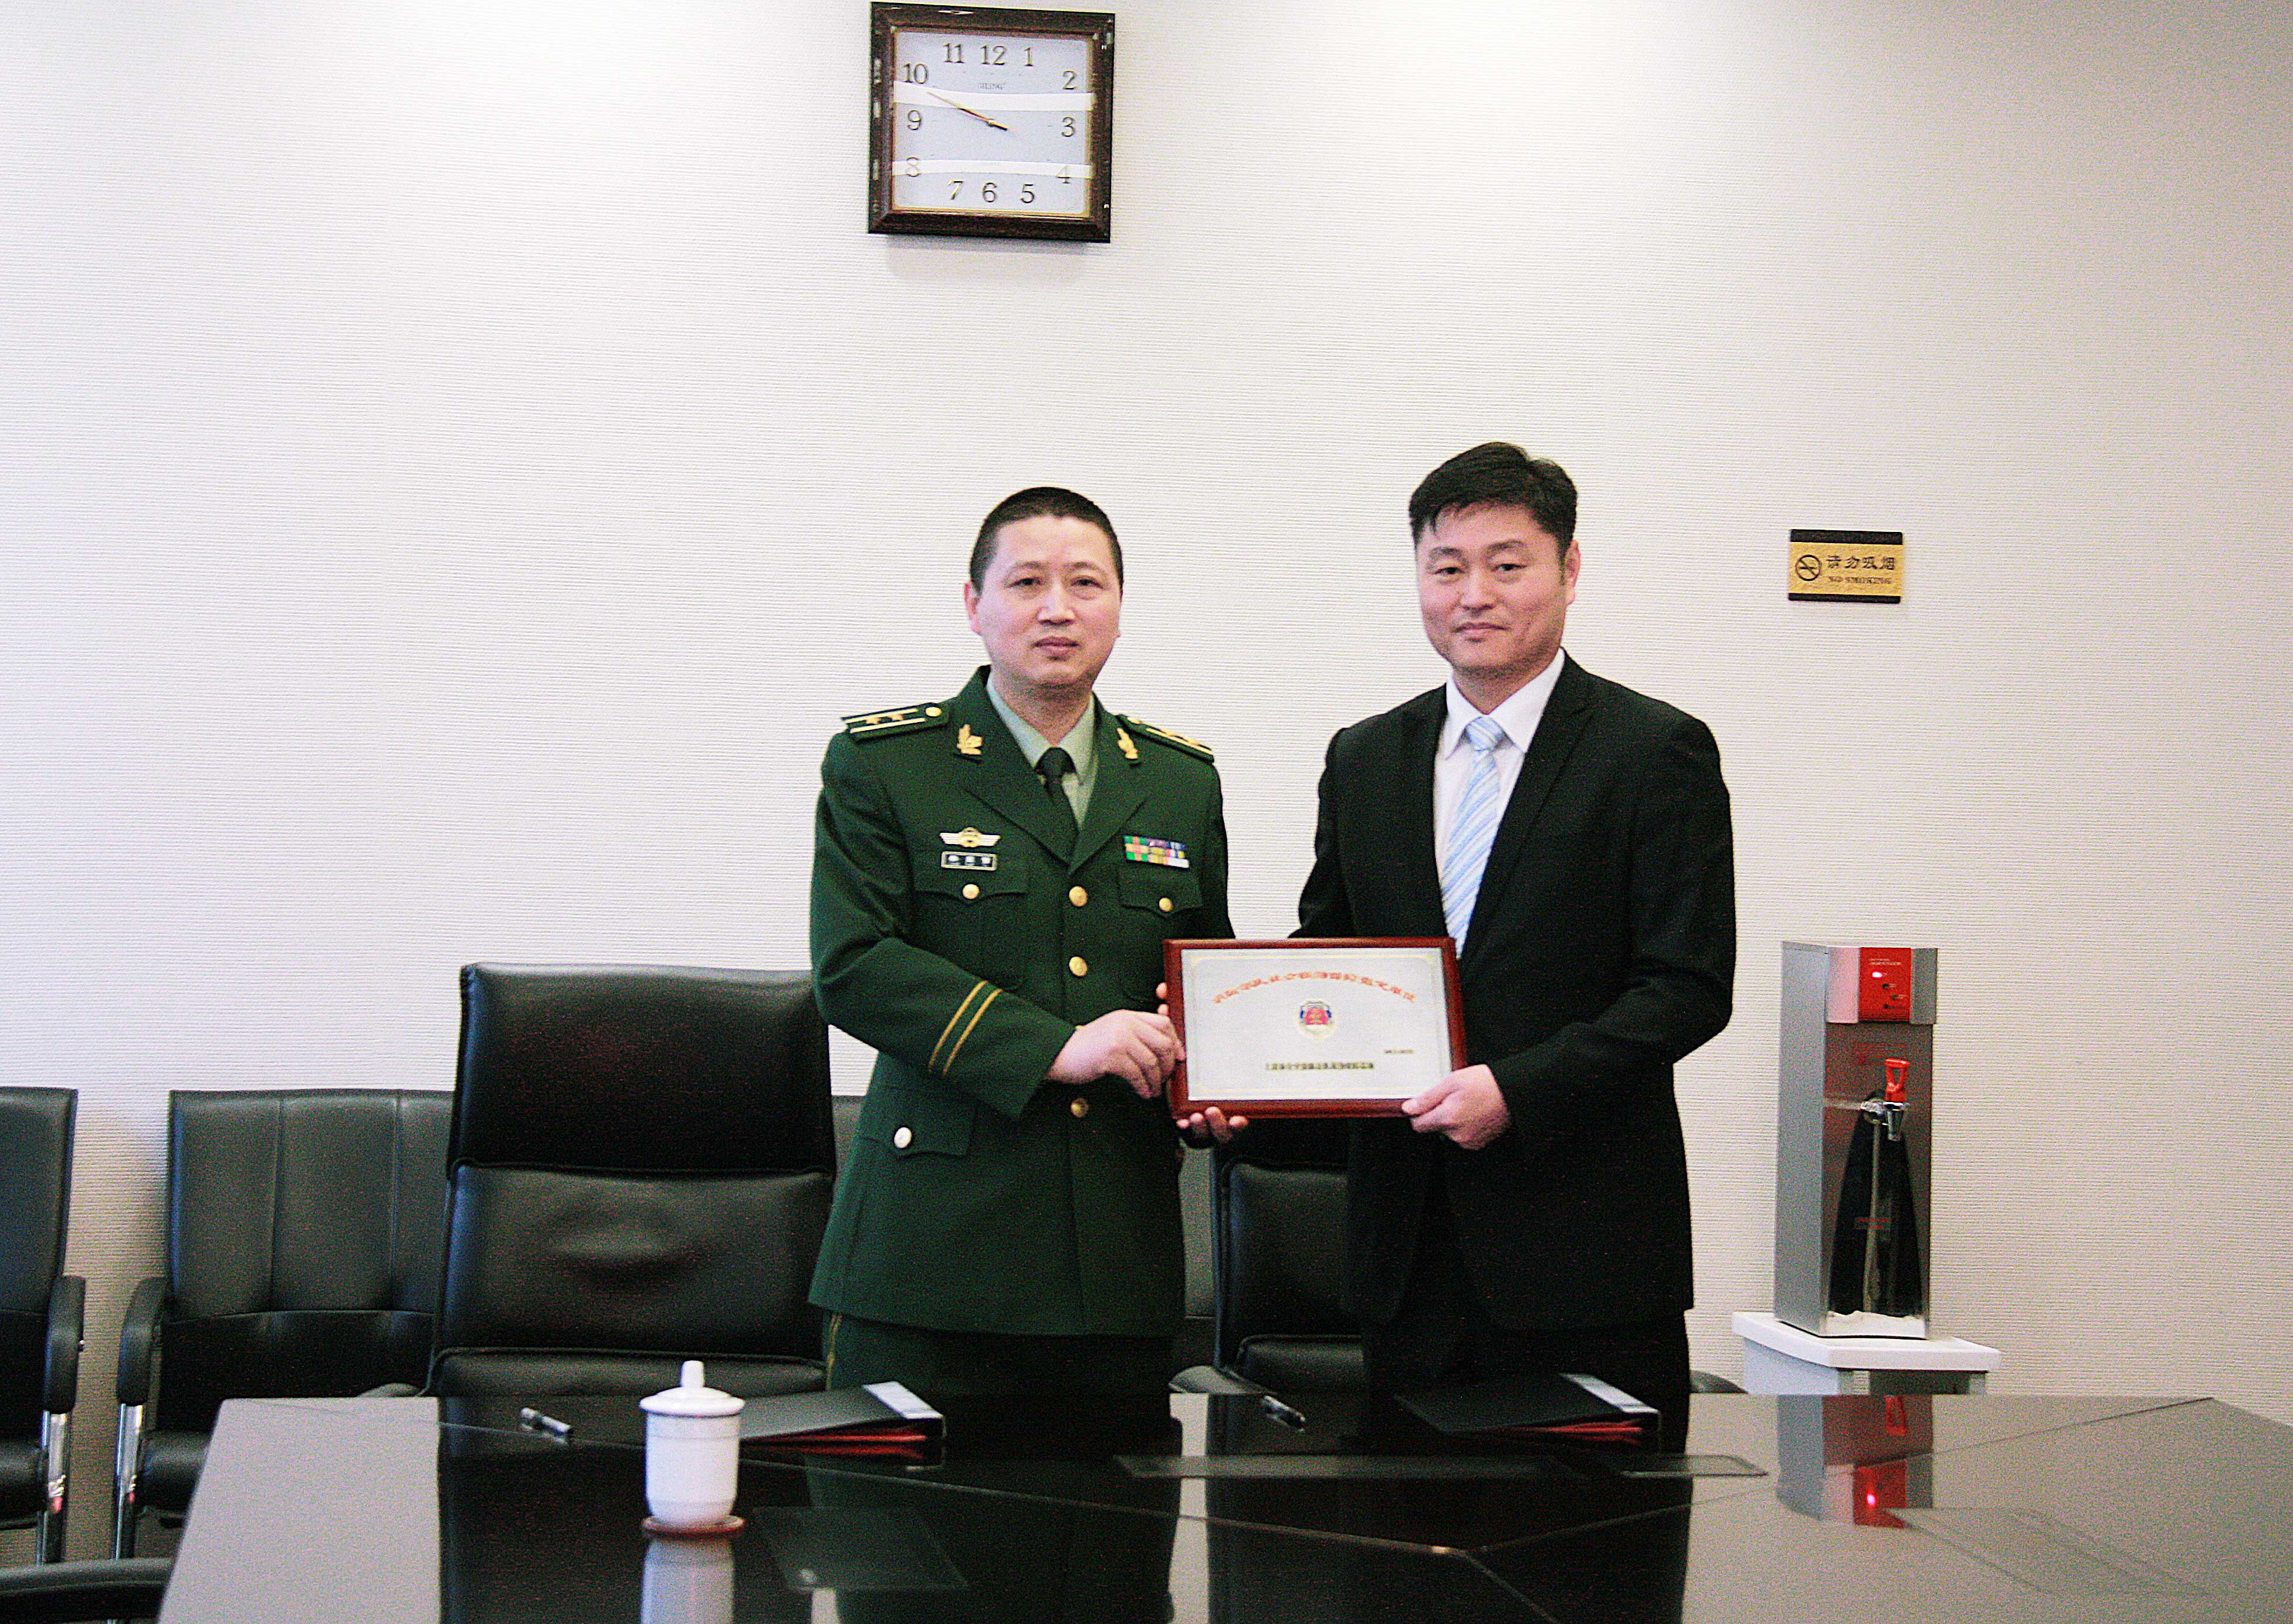 龙工签约成为上海消防联勤保证社会联动单位